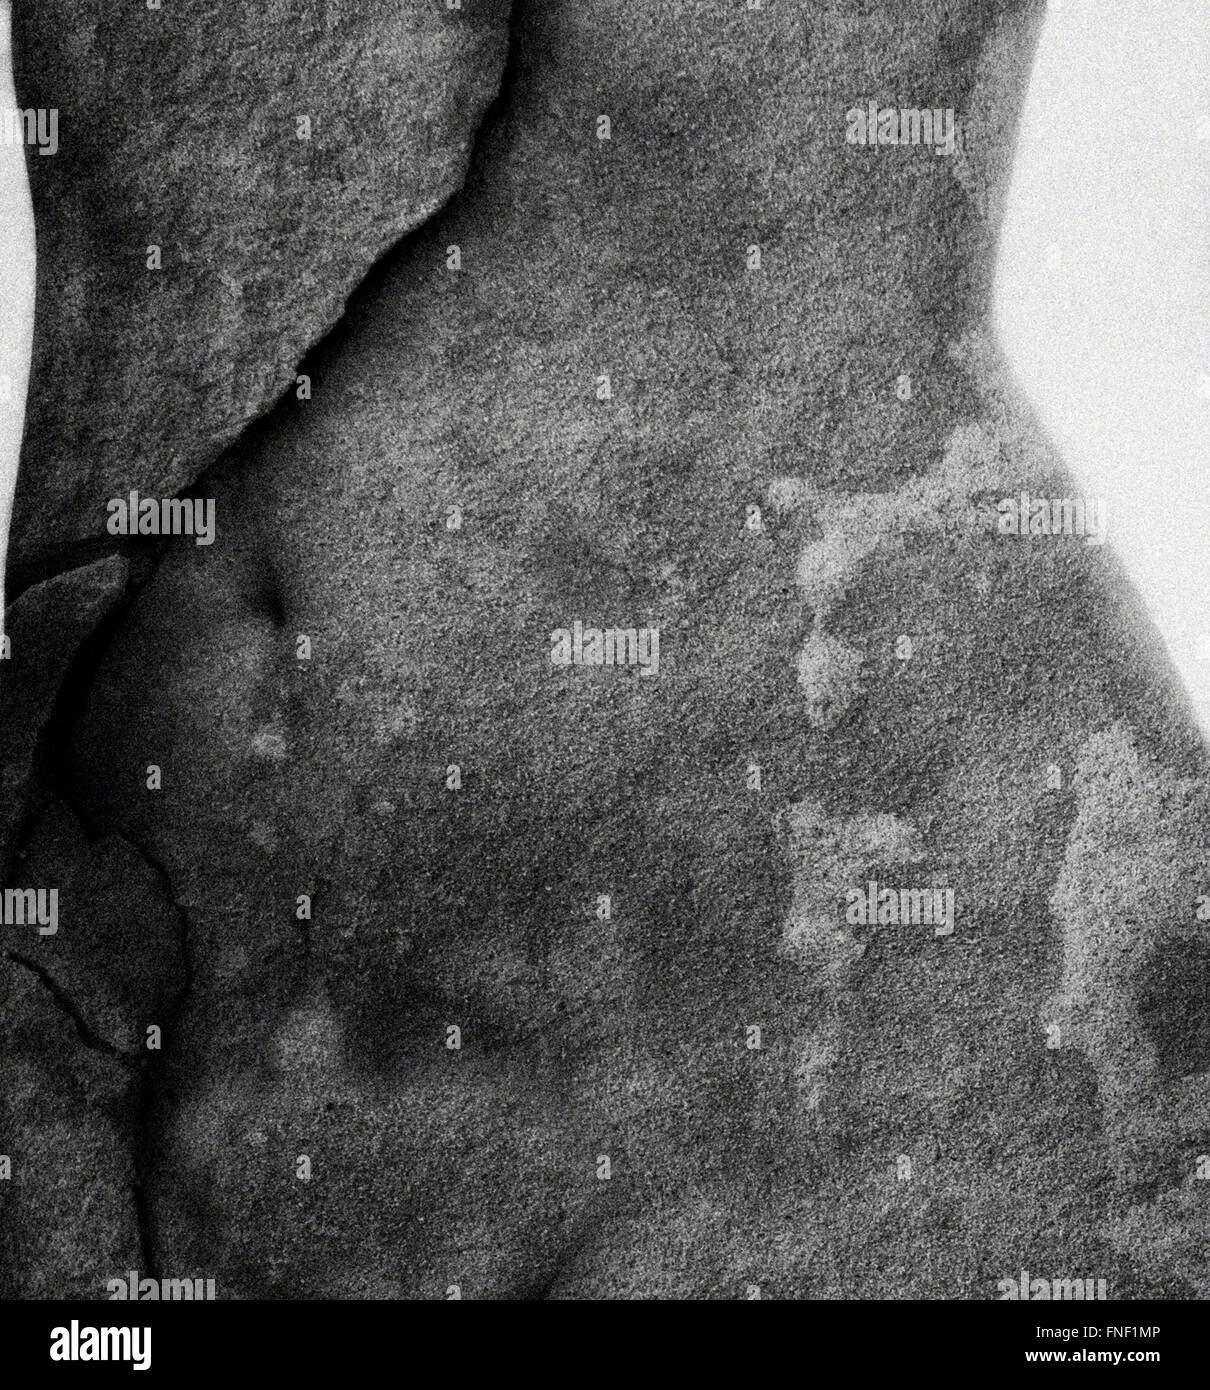 L'auto-portrait of a woman's torse mélangé à une texture de granit Banque D'Images